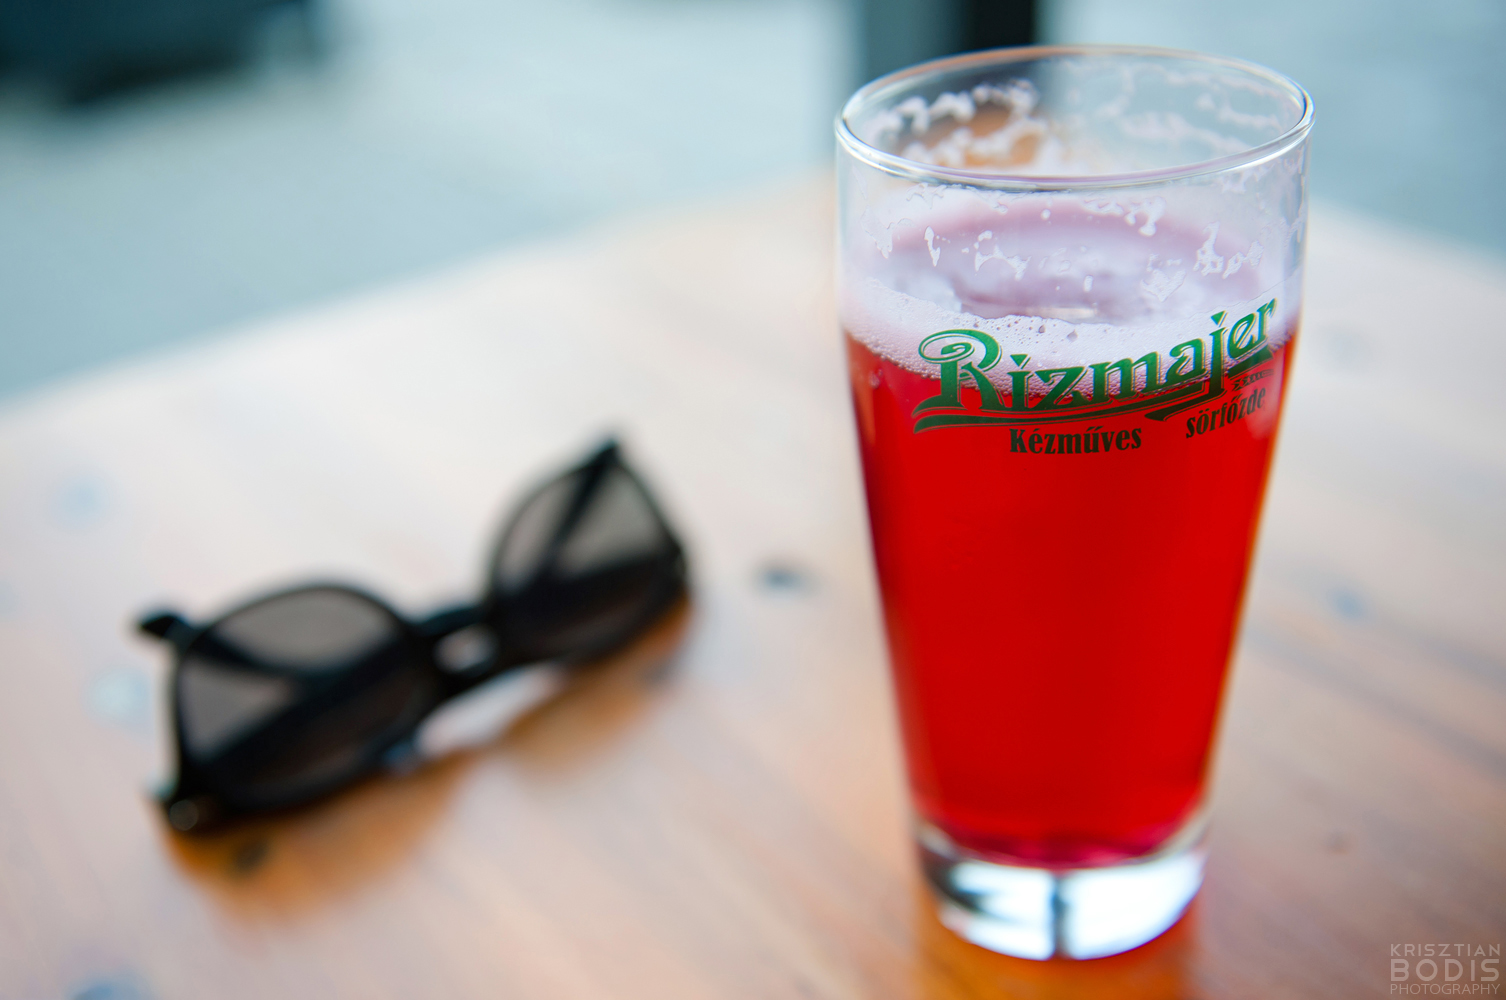 A Rizmajer-sörök titkai: megnéztük a legendás csepeli főzdét és sörházat